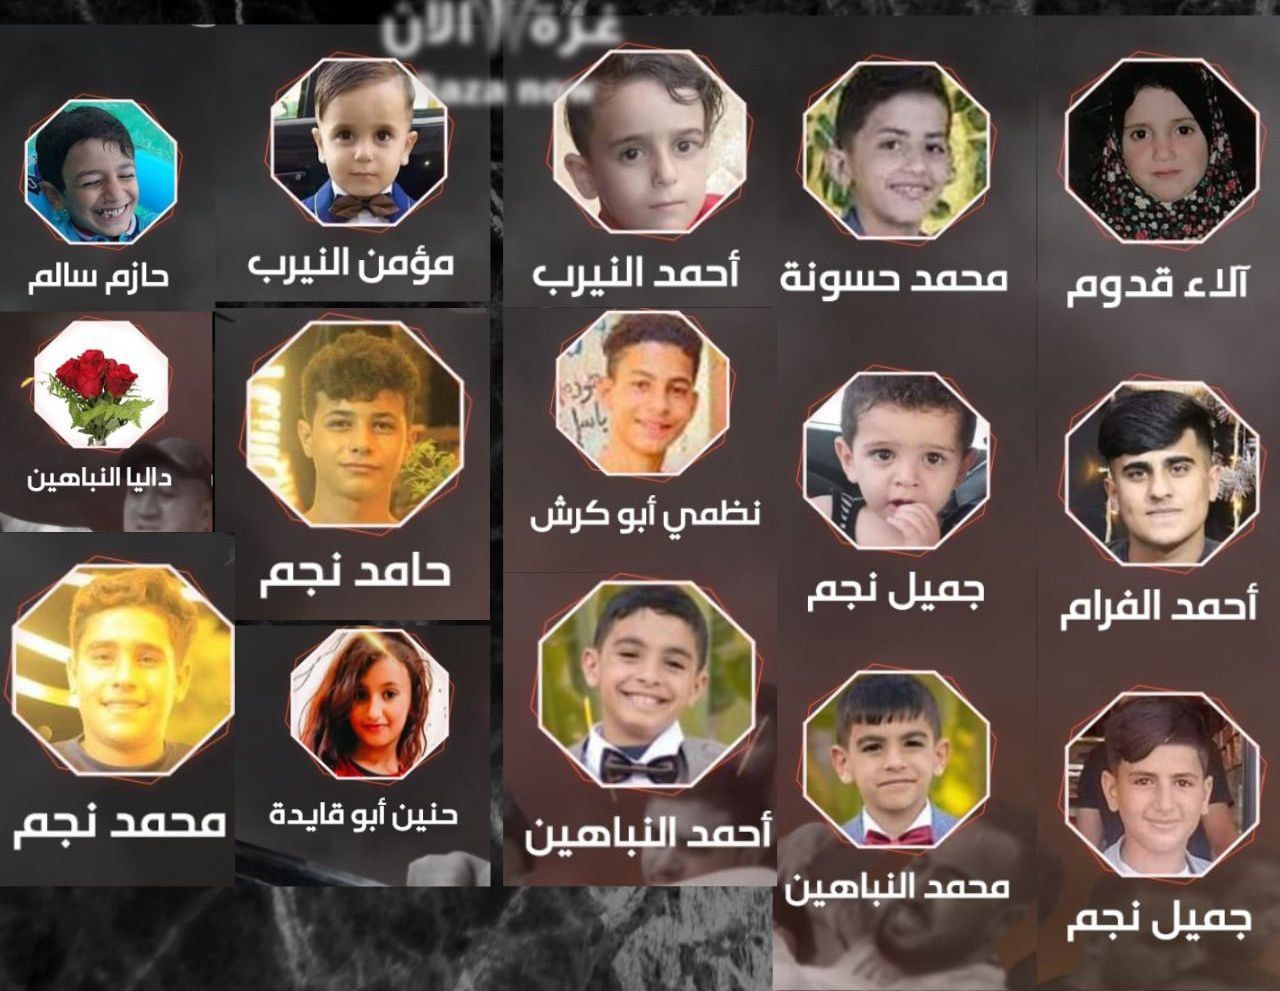 Des enfants palestiniens tués par les bombardements israéliens contre Gaza.